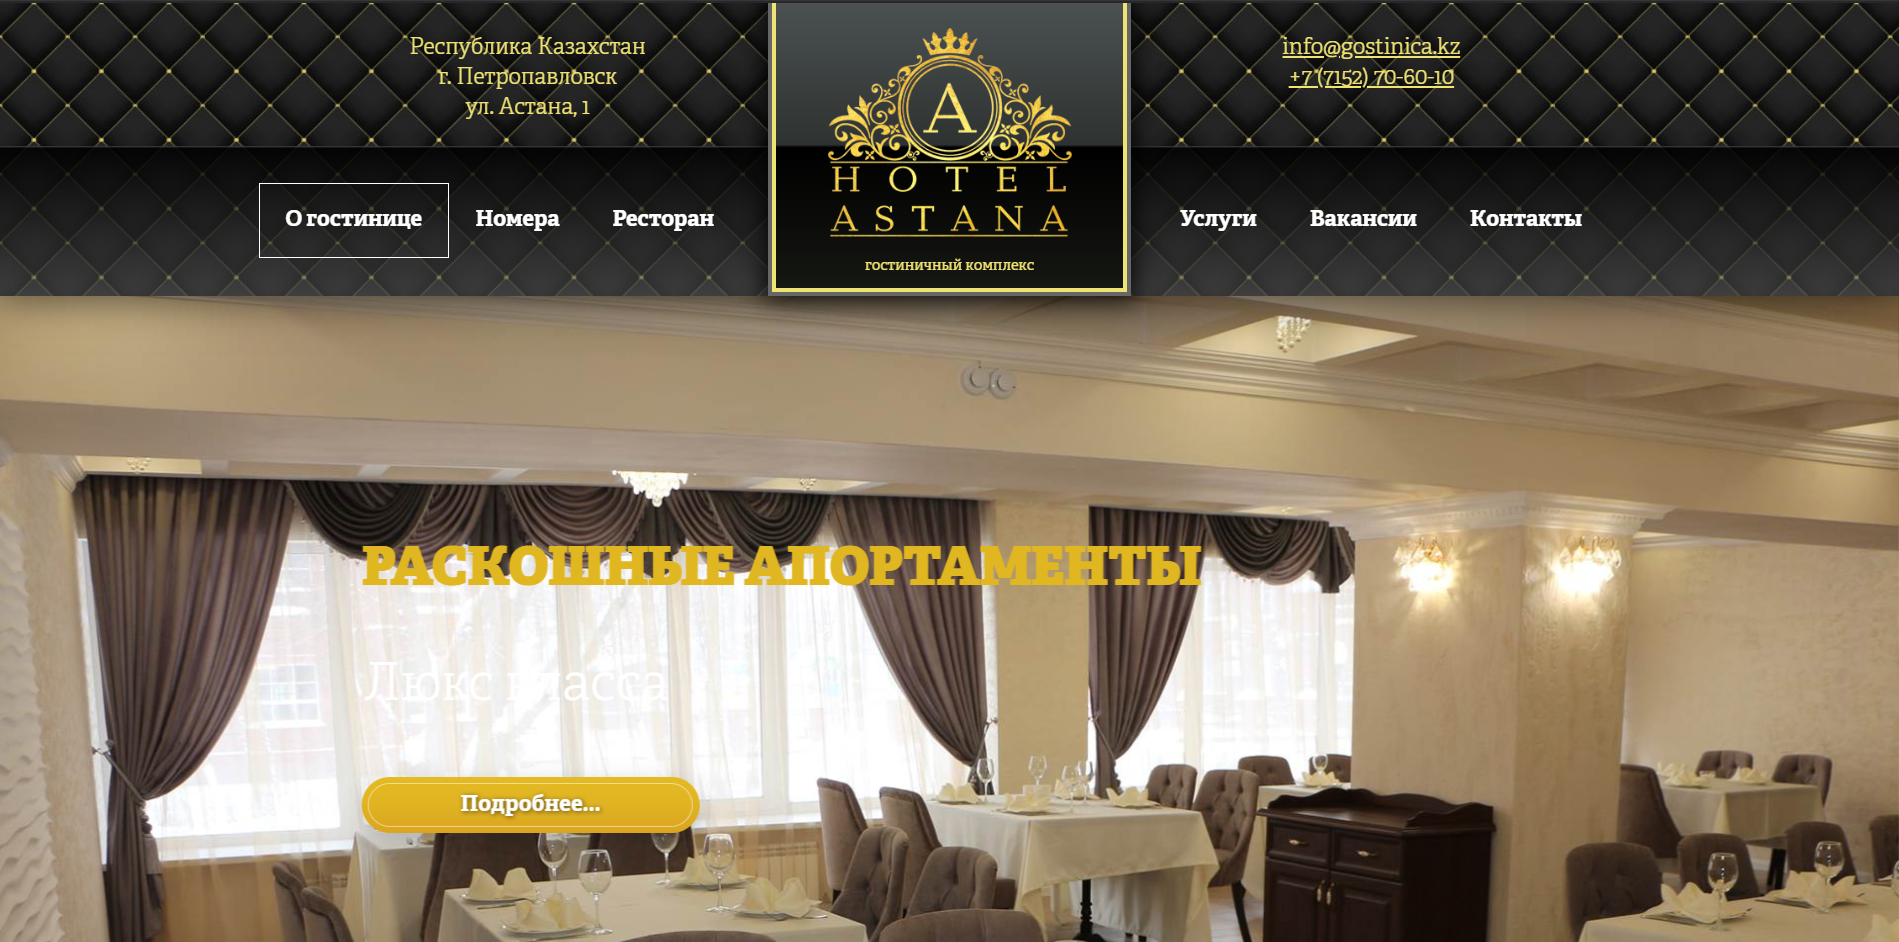 Сайт для ГК «HOTEL ASTANA» - https://gostinica.kz/